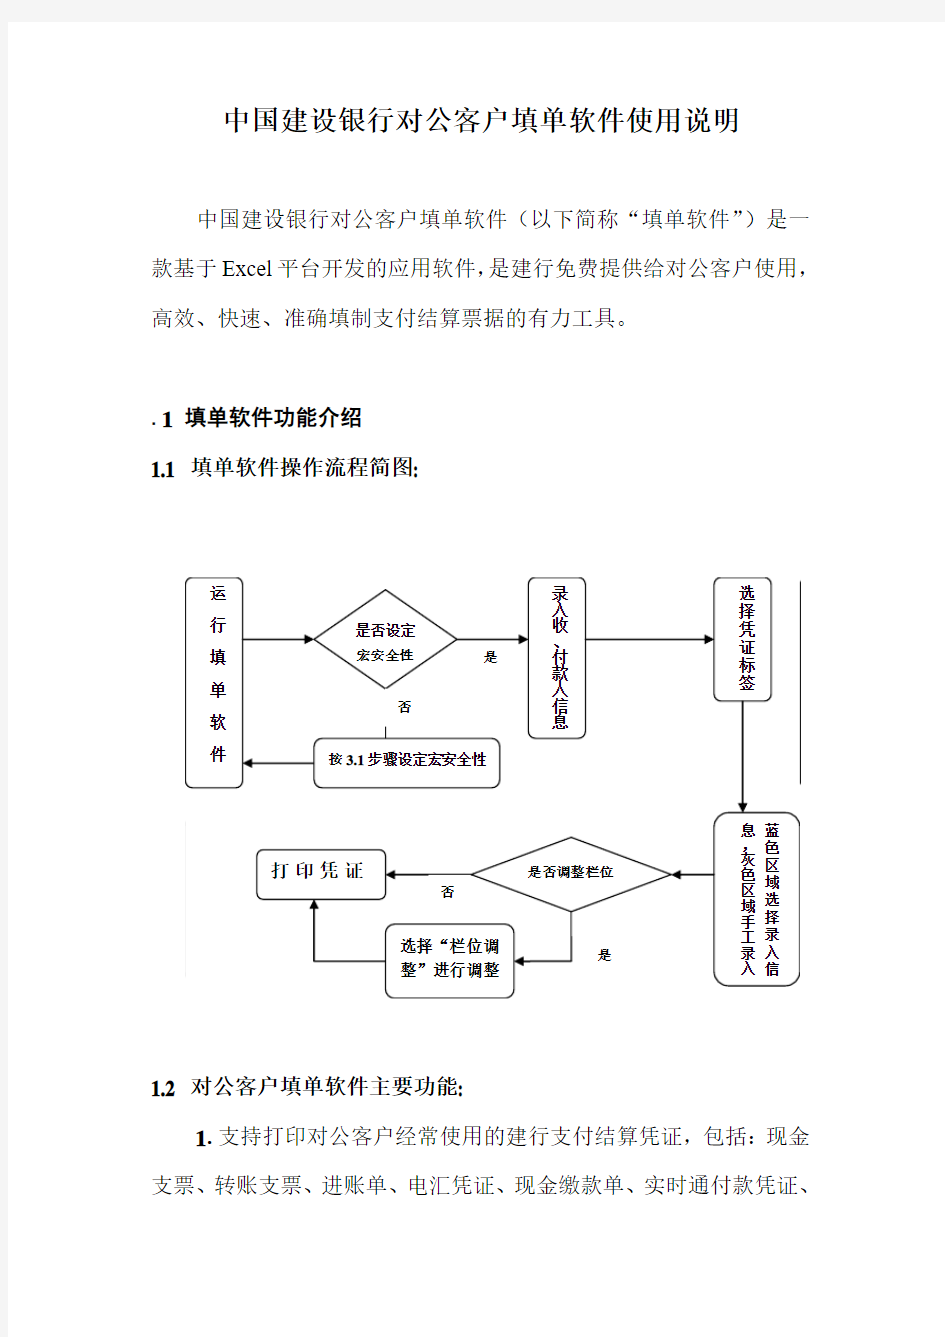 中国建设银行对公填单软件使用说明3.16